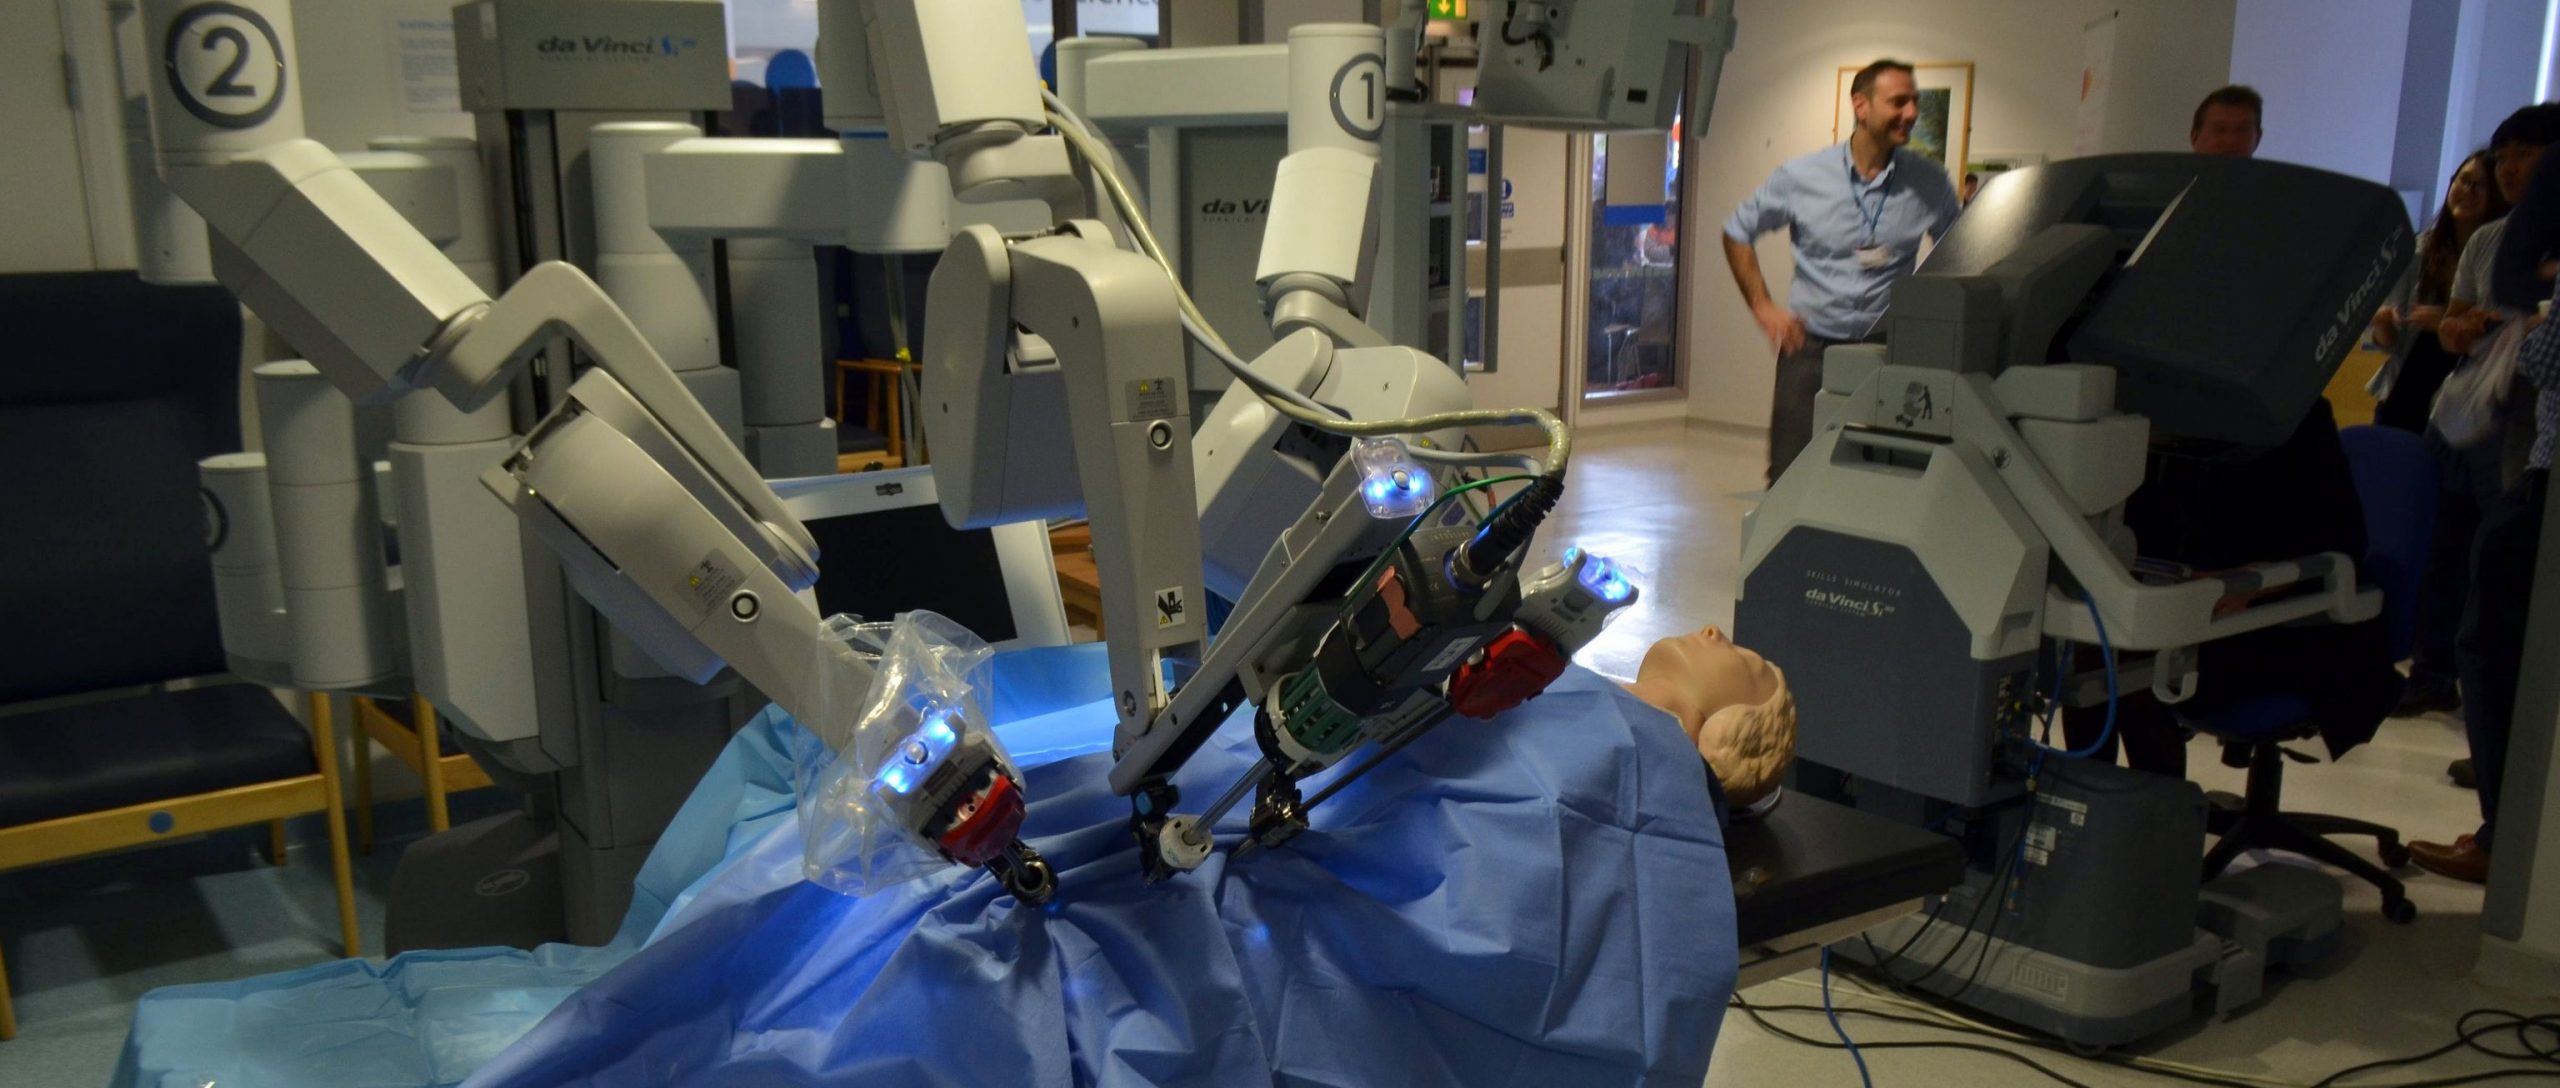 تعرف على ” دافينشي” الروبوت الجراحي الأشهر في العالم